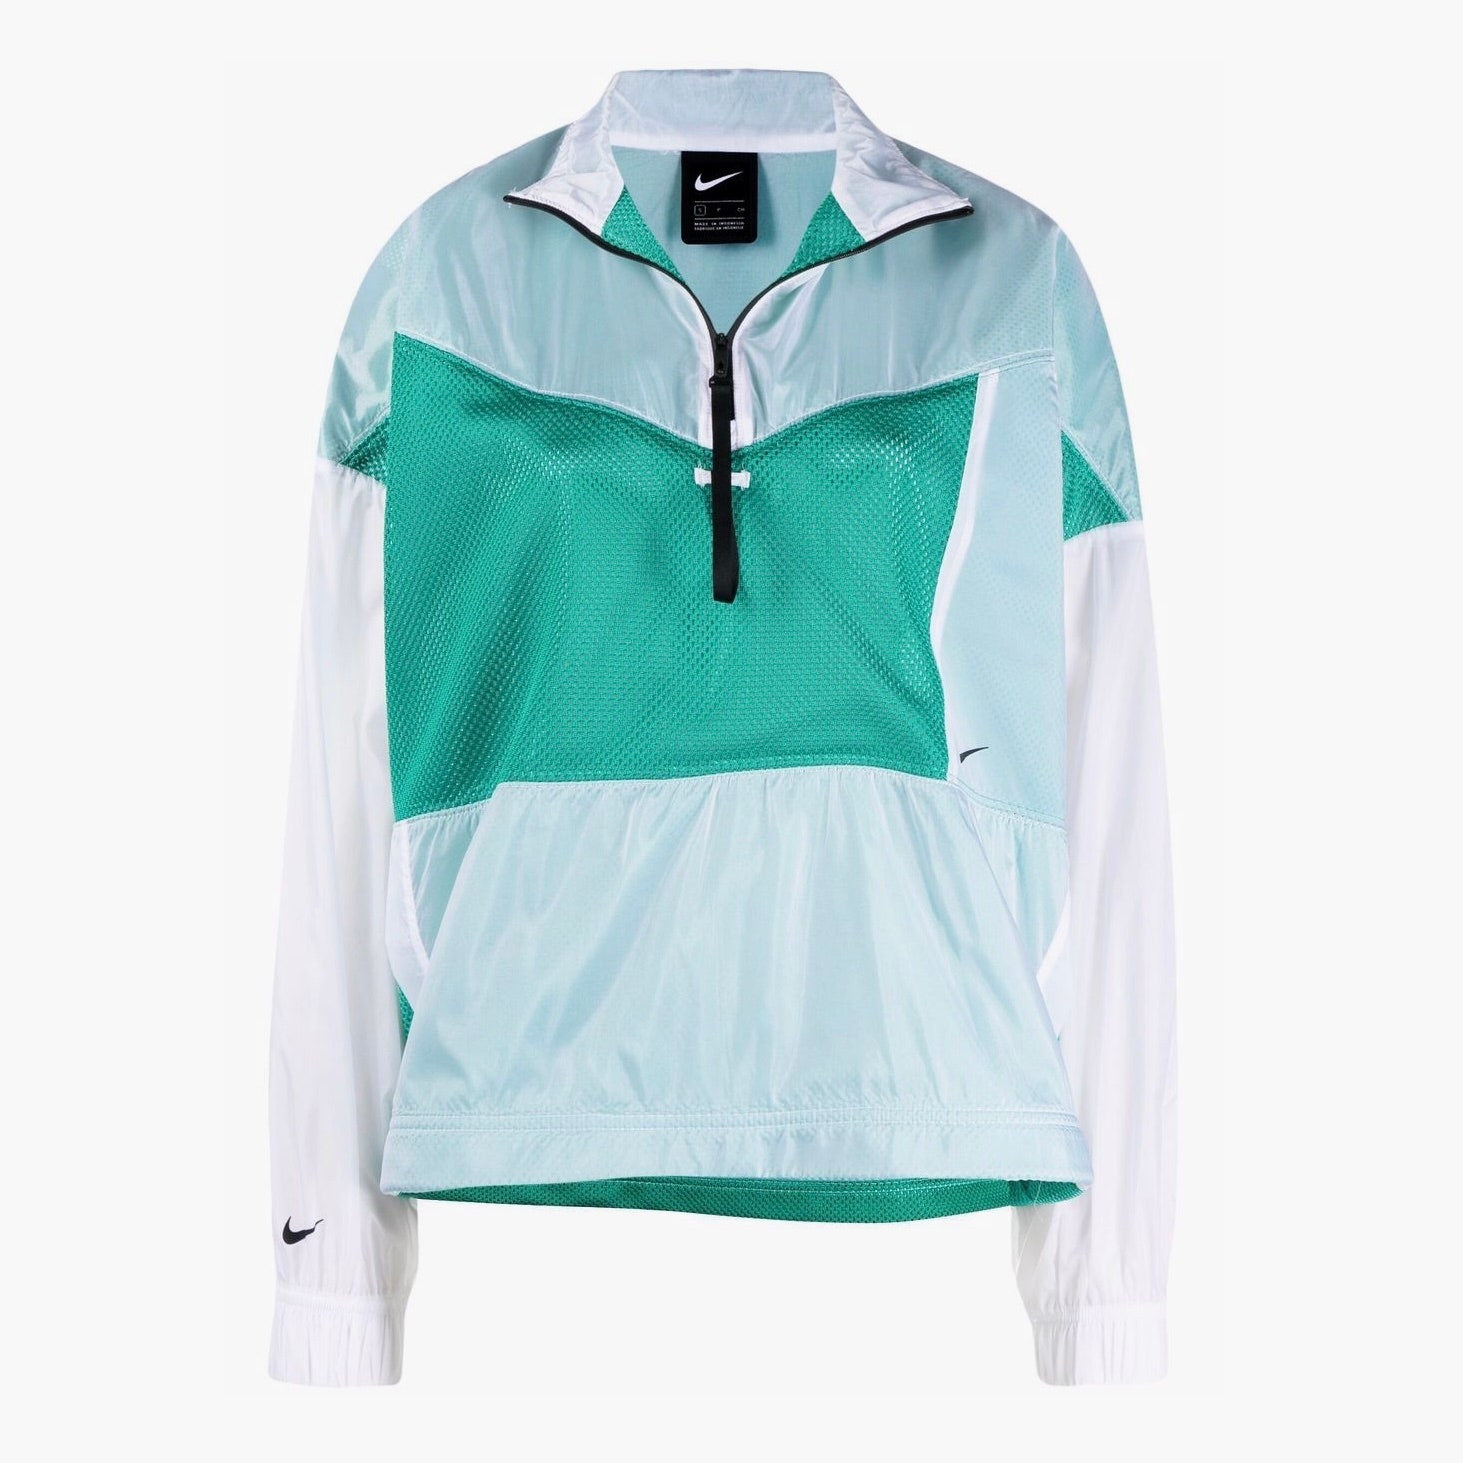 Олимпийка Nike 9806 рублей farftech.com